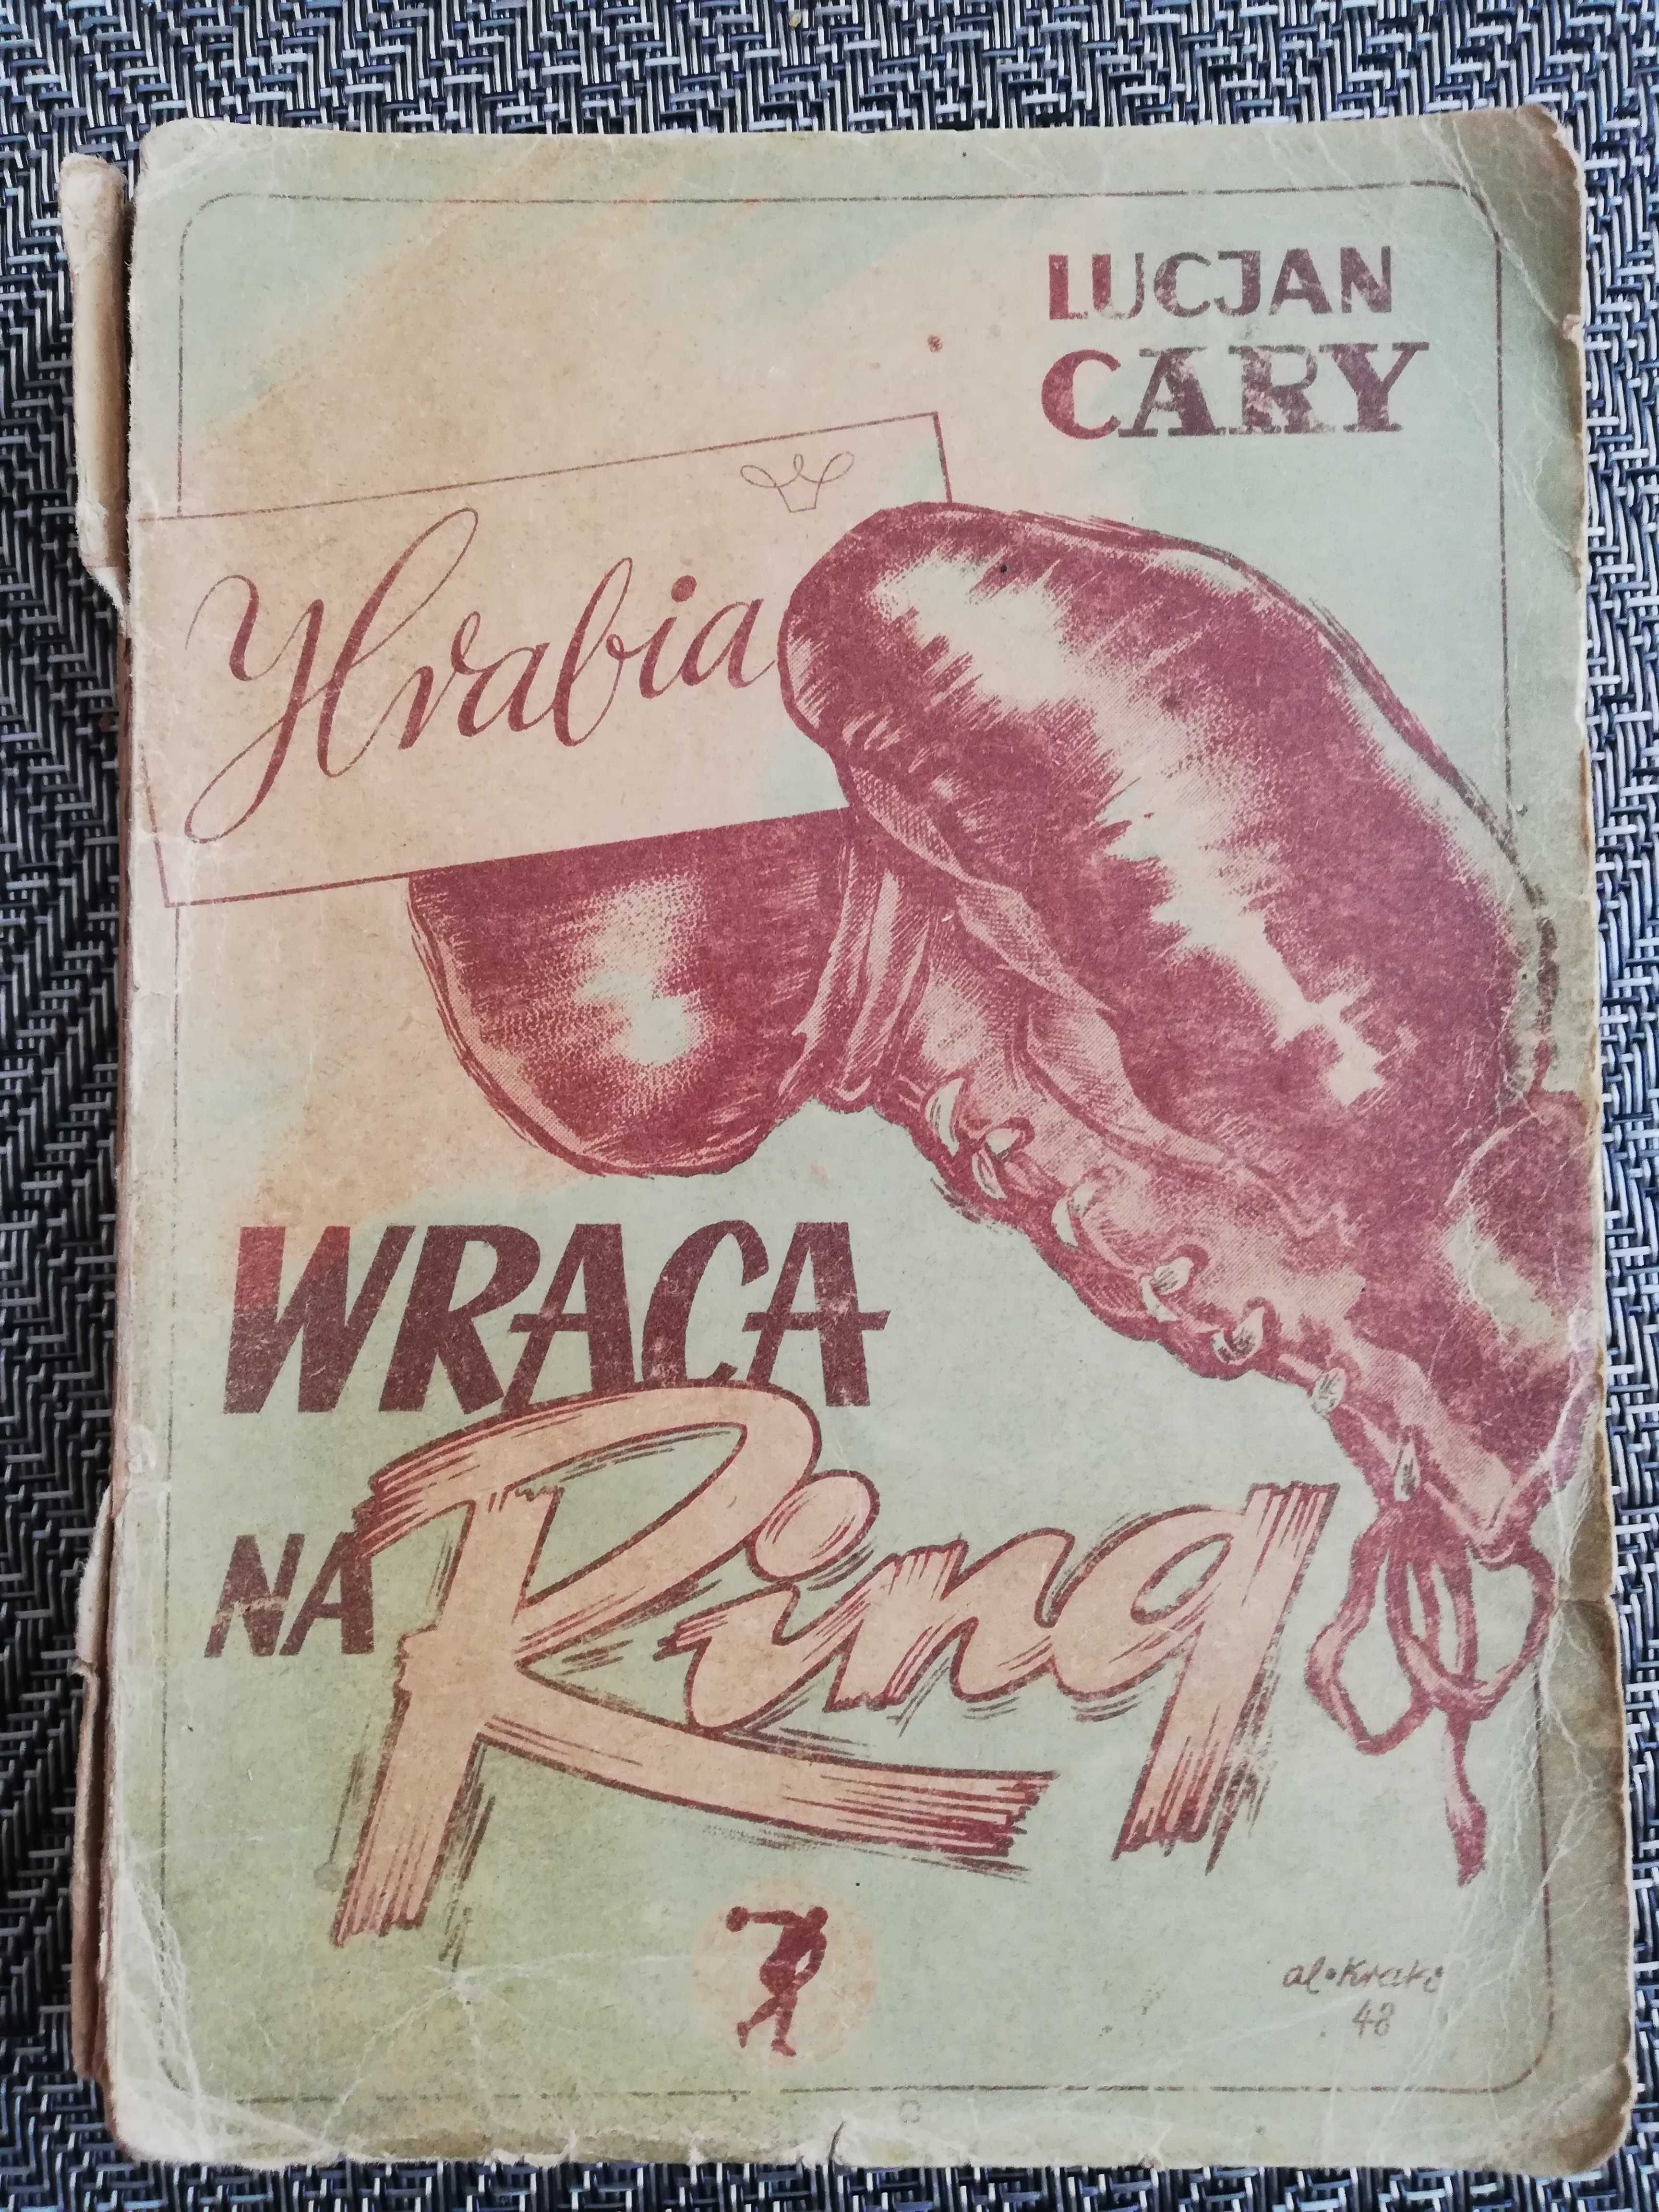 Hrabia wraca na ring - Lucjan Cary - 1948 rok